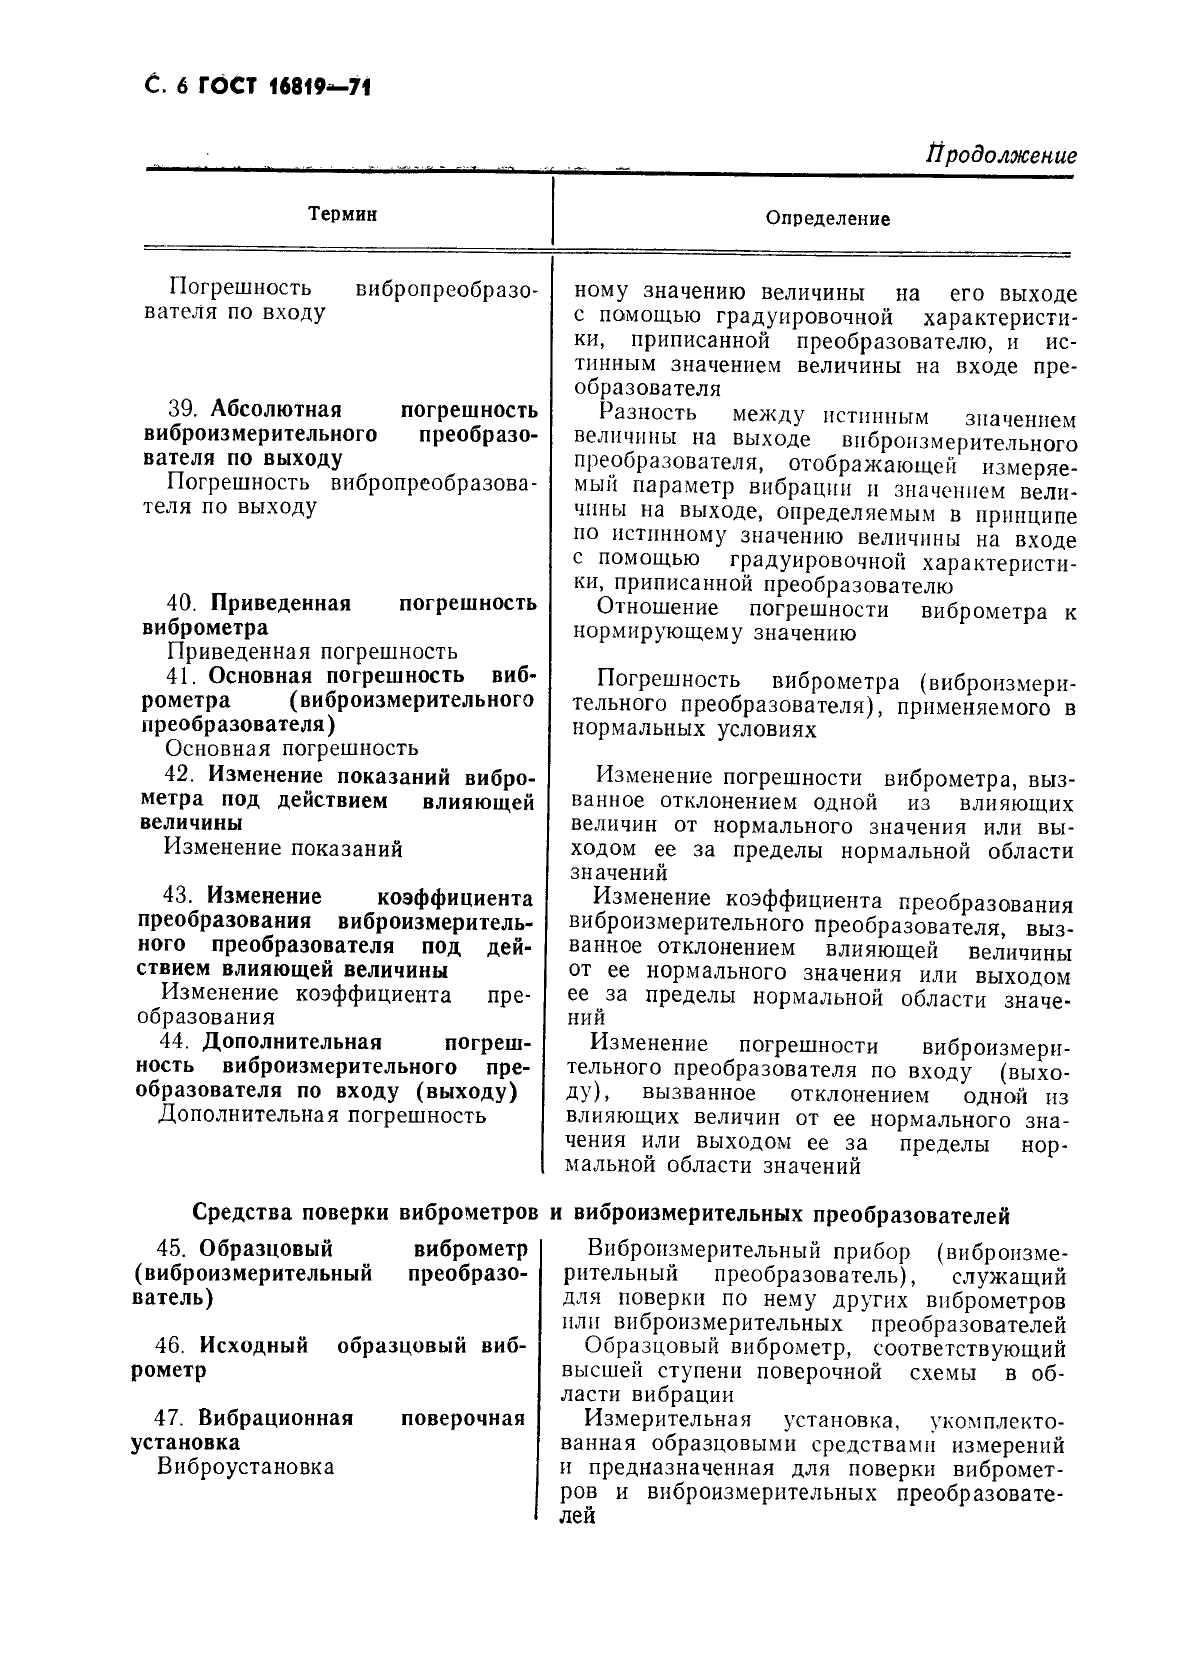 ГОСТ 16819-71 Приборы виброизмерительные. Термины и определения (фото 7 из 10)